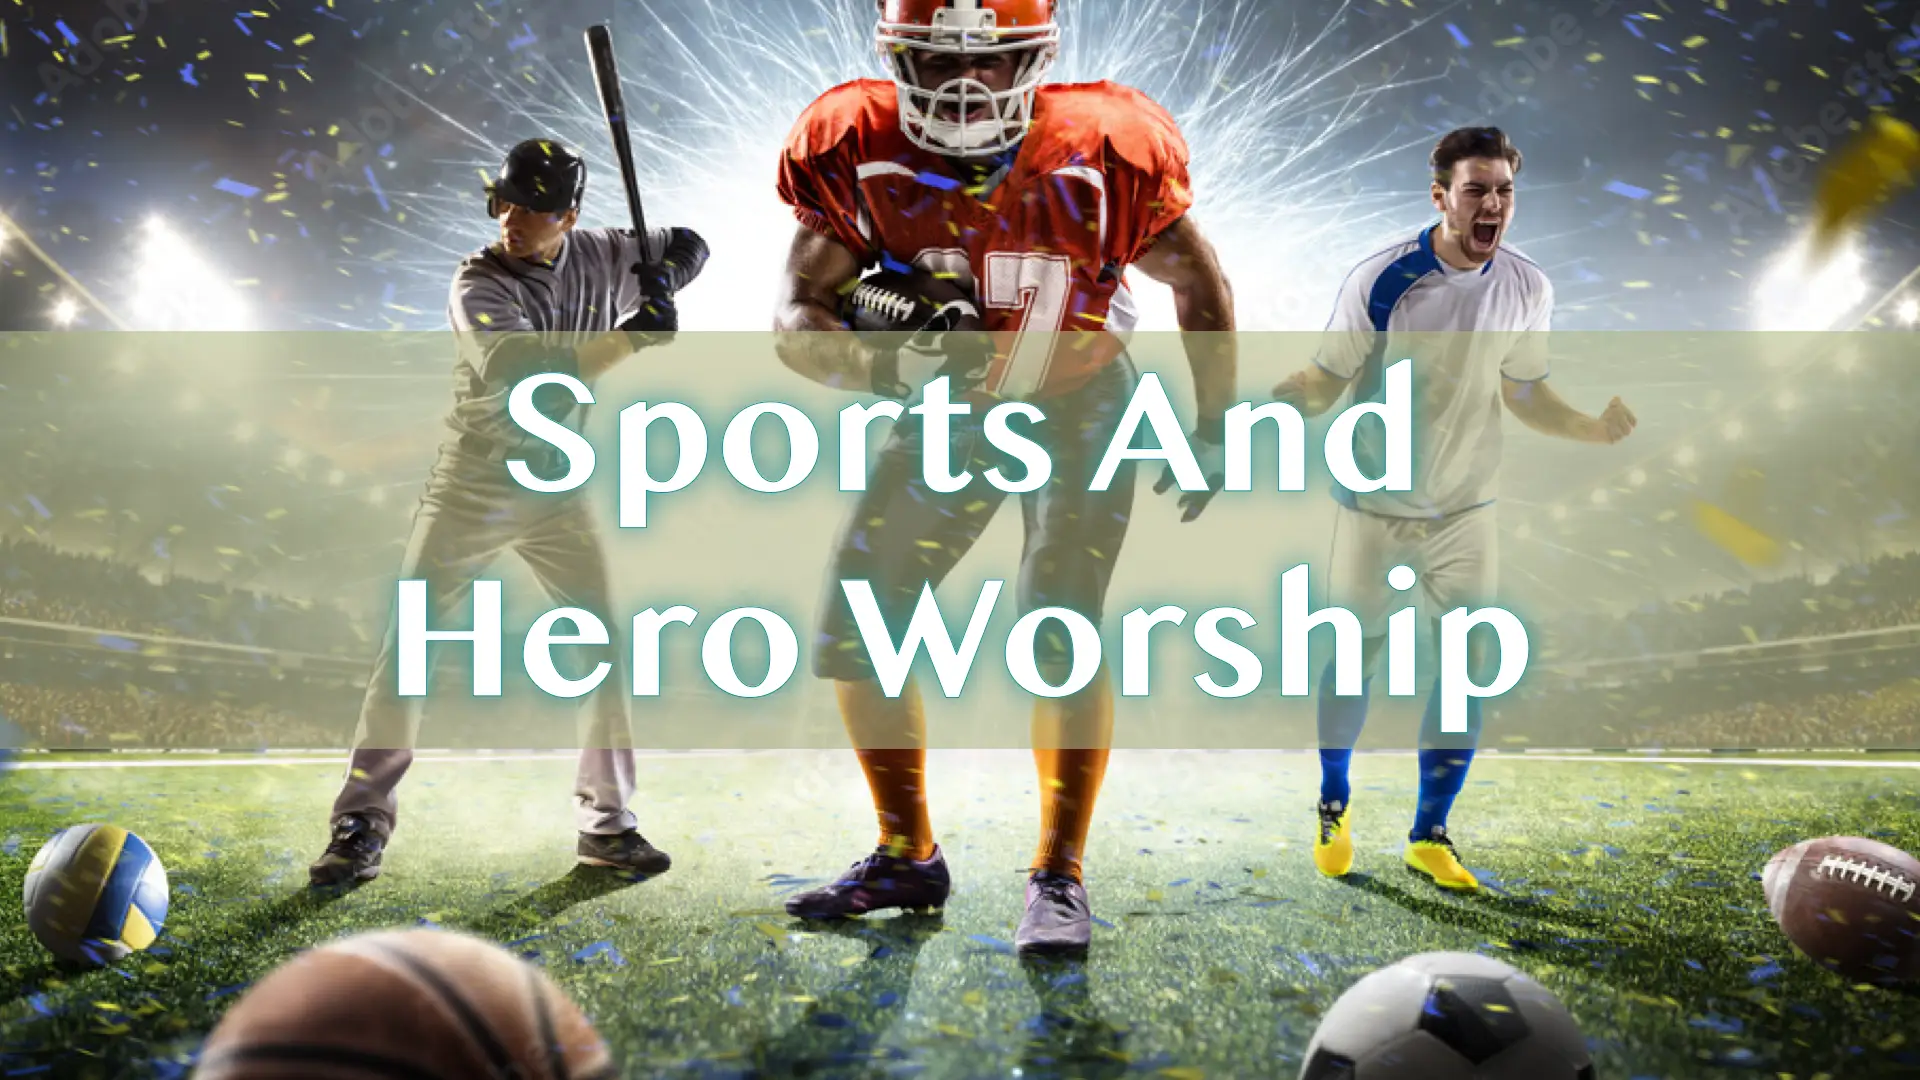 Sports and Hero Worship